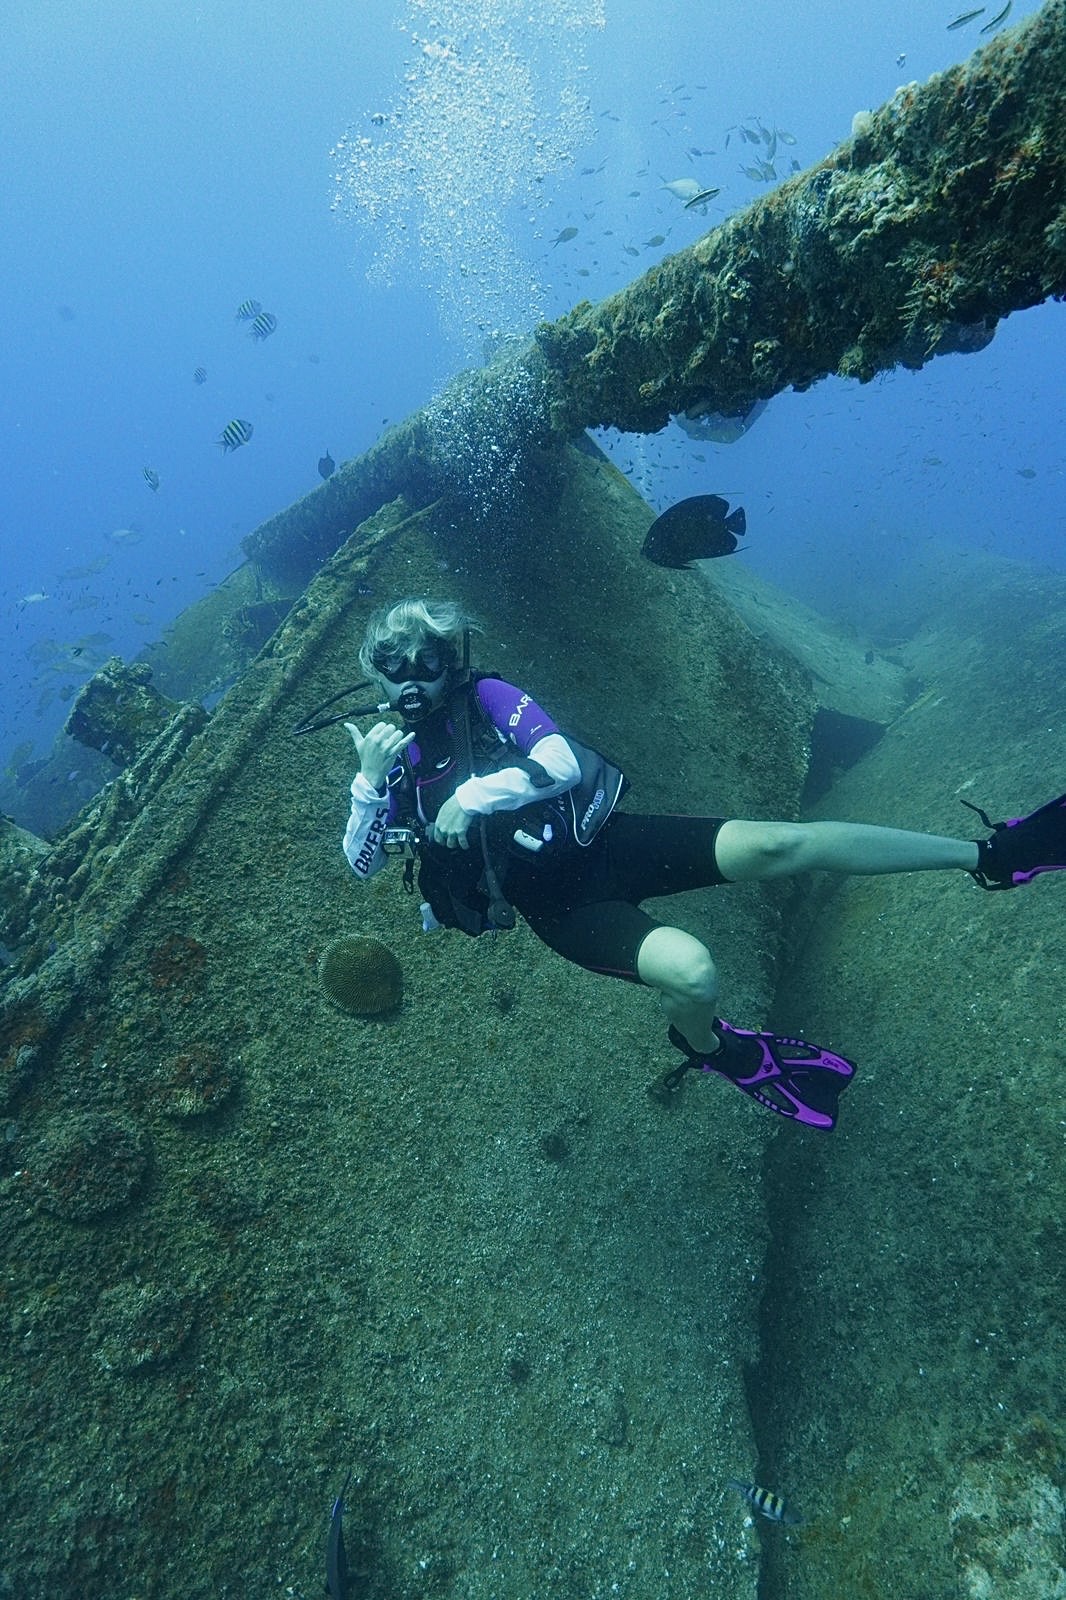 Student underwater in SCUBA gear